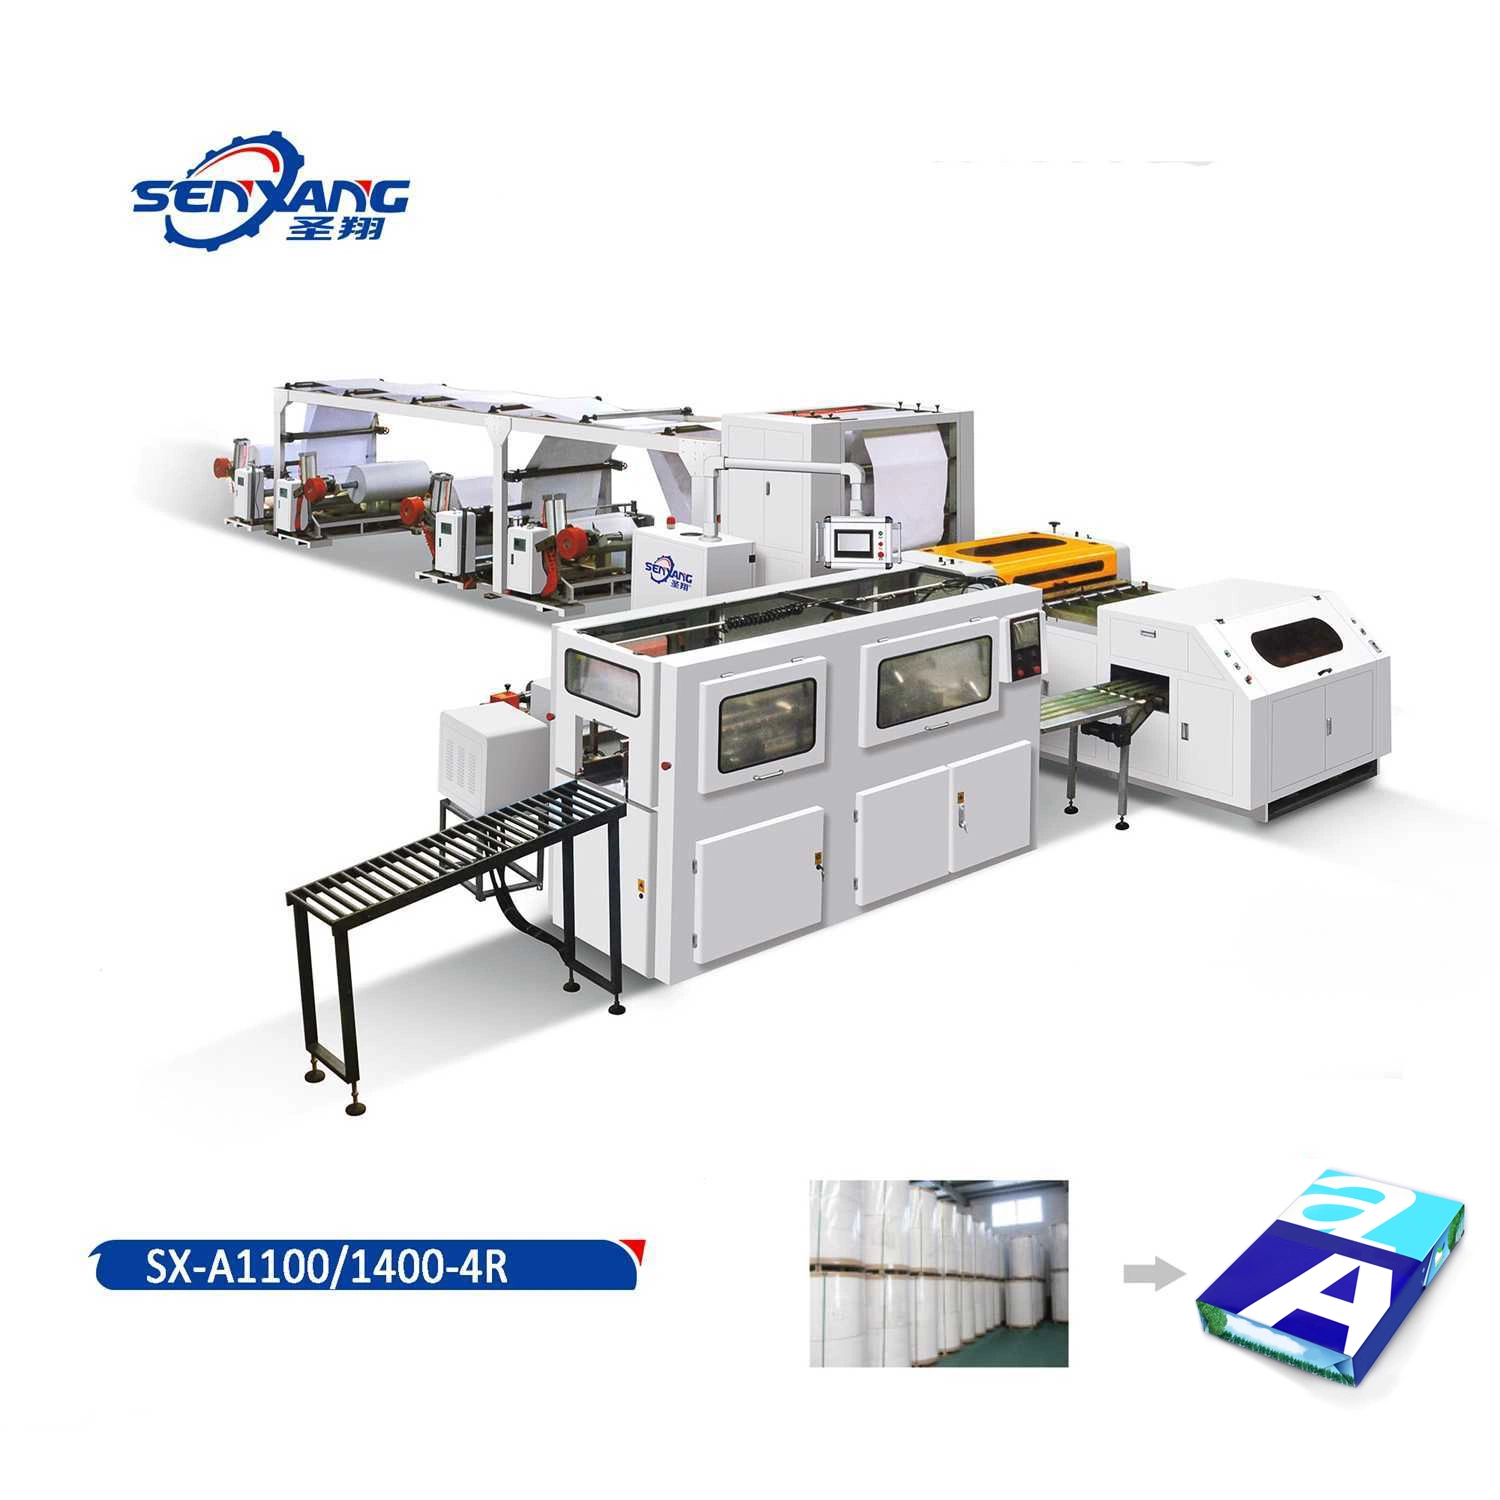 A4 máquina de corte y embalaje de papel, máquina de corte y embalaje automático de rollo de papel A4, cortadora de papel de copia, máquina de hojas de papel